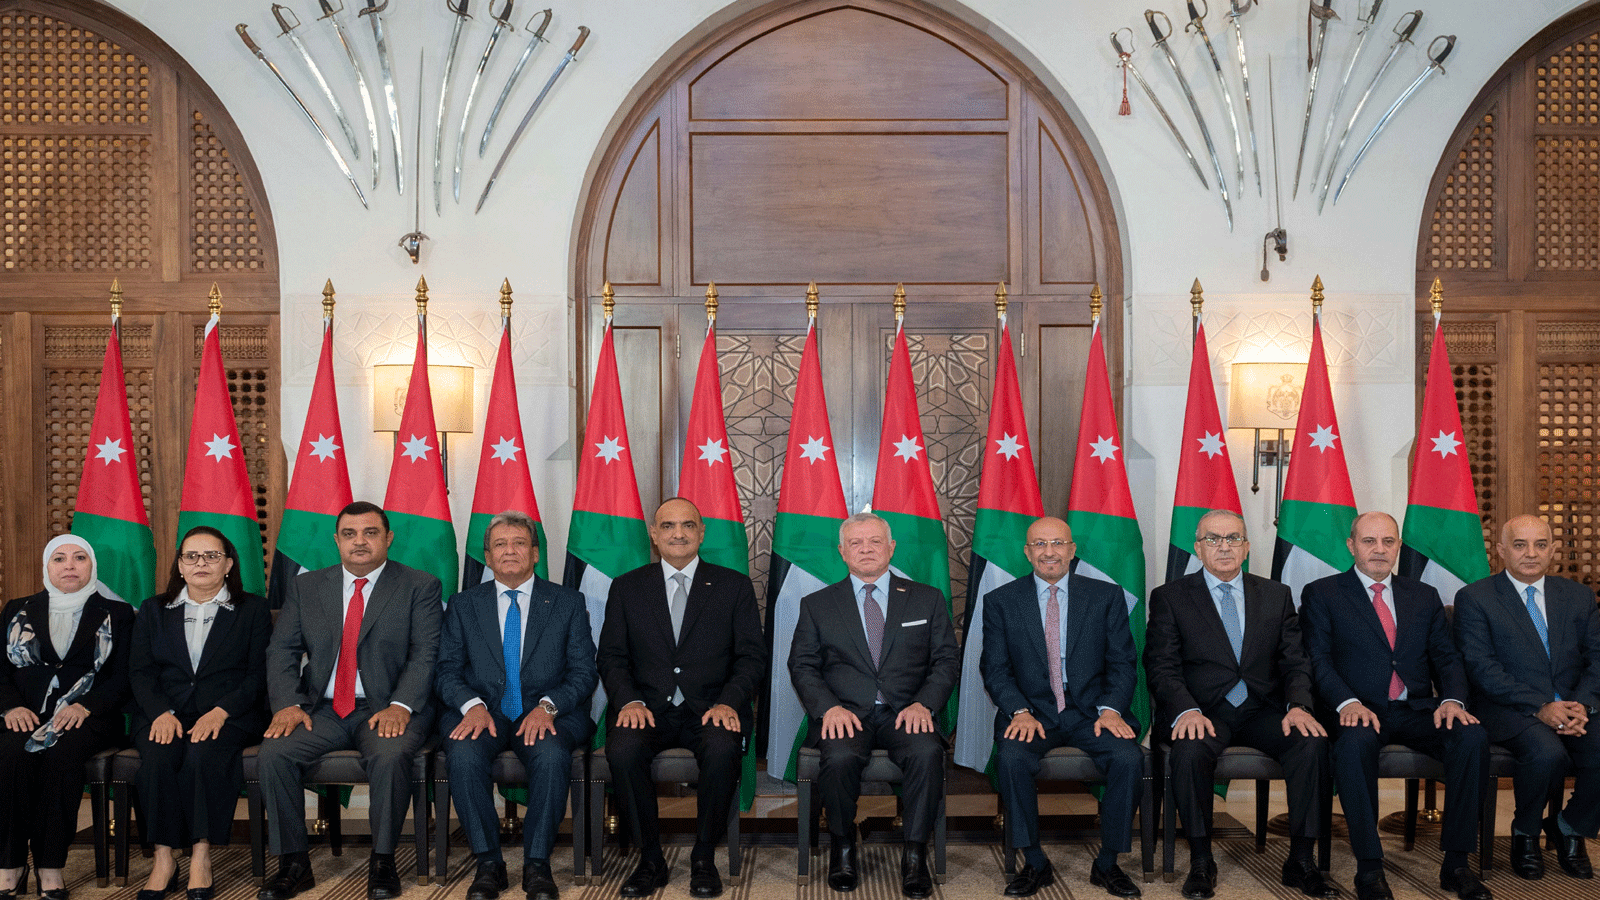 صورة نشرتها وكالة (بترا) الأردنية يظهر فيها الملك عبدالله الثاني ورئيس مجلس الوزراء بشر الخصاونة والوزراء المعينين